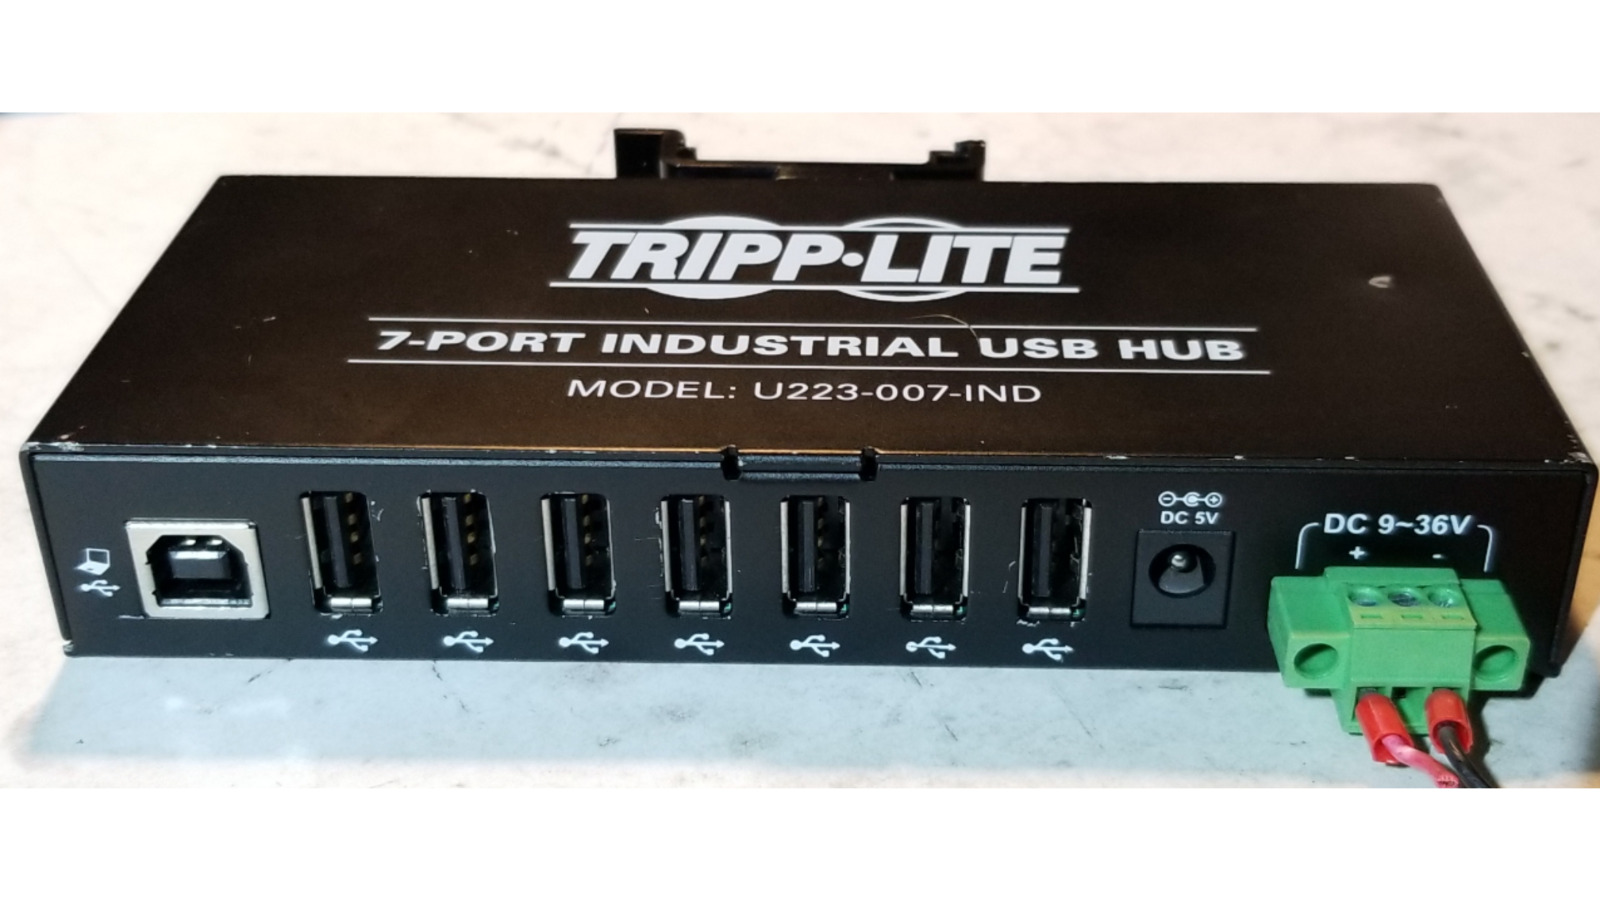 Tripp Lite 7-port Industrial USB Hub U223-007-IND